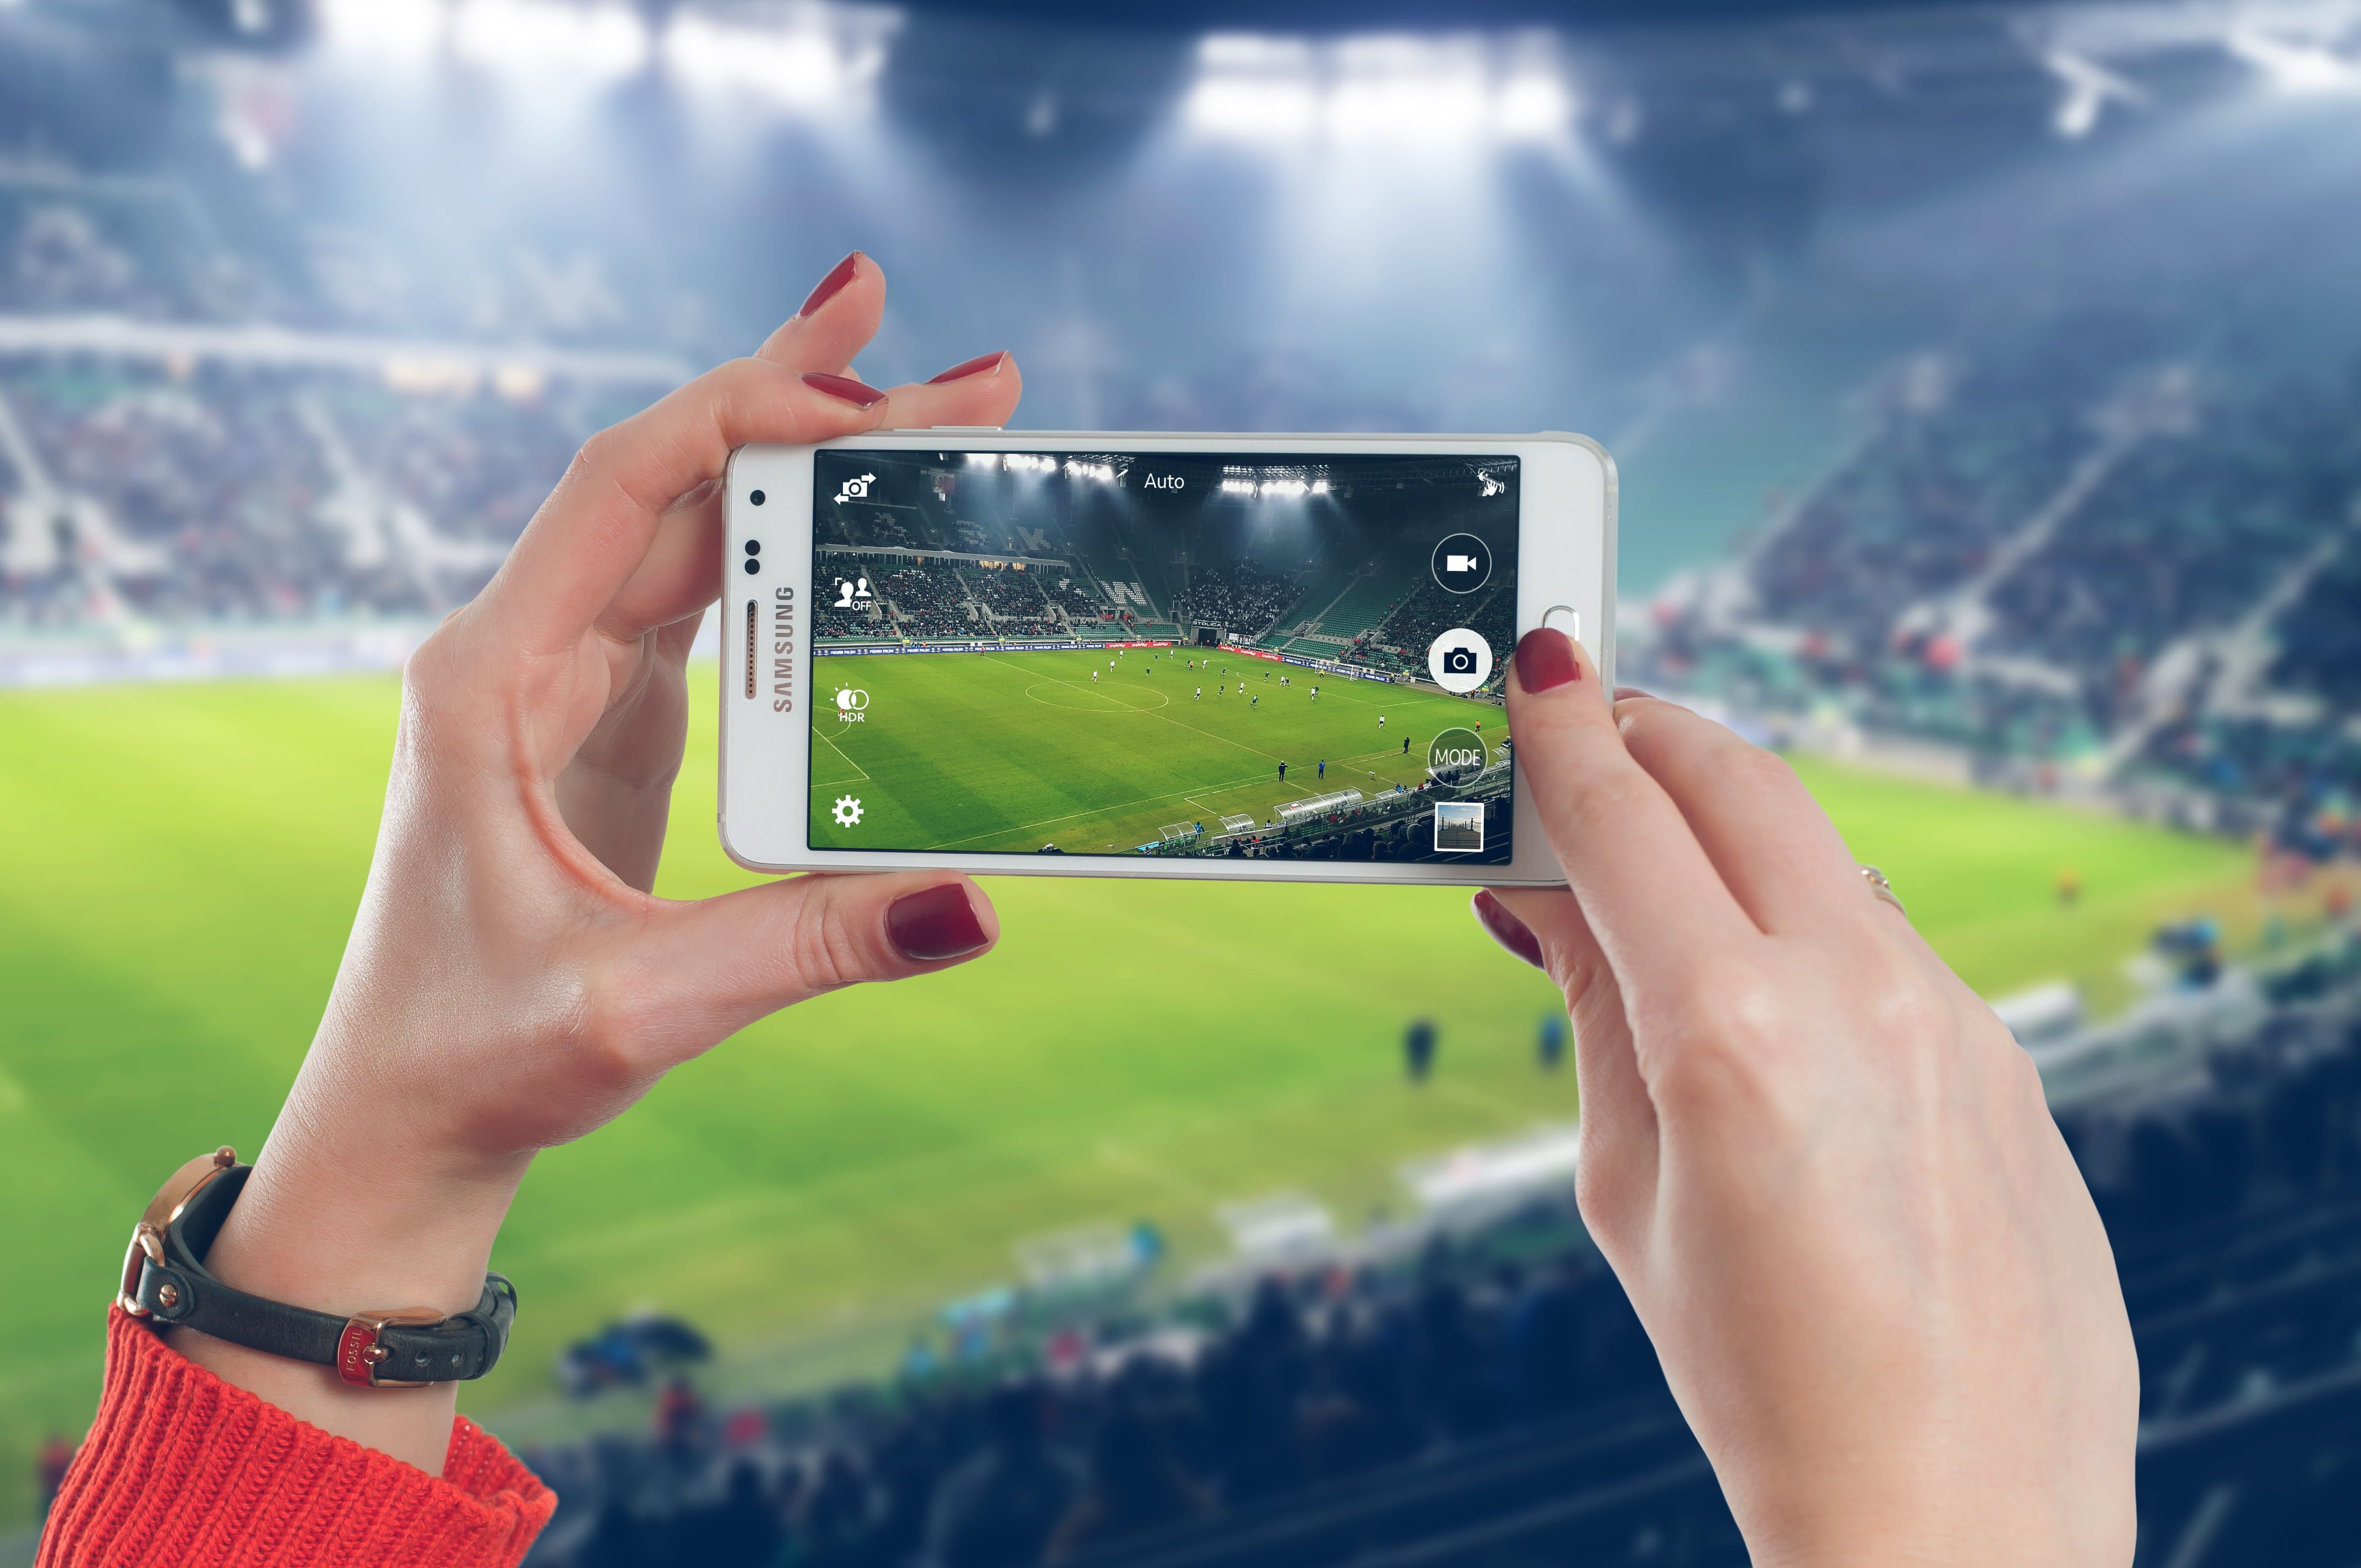 Móvil cámara foto vídeo fútbol / PxFuel